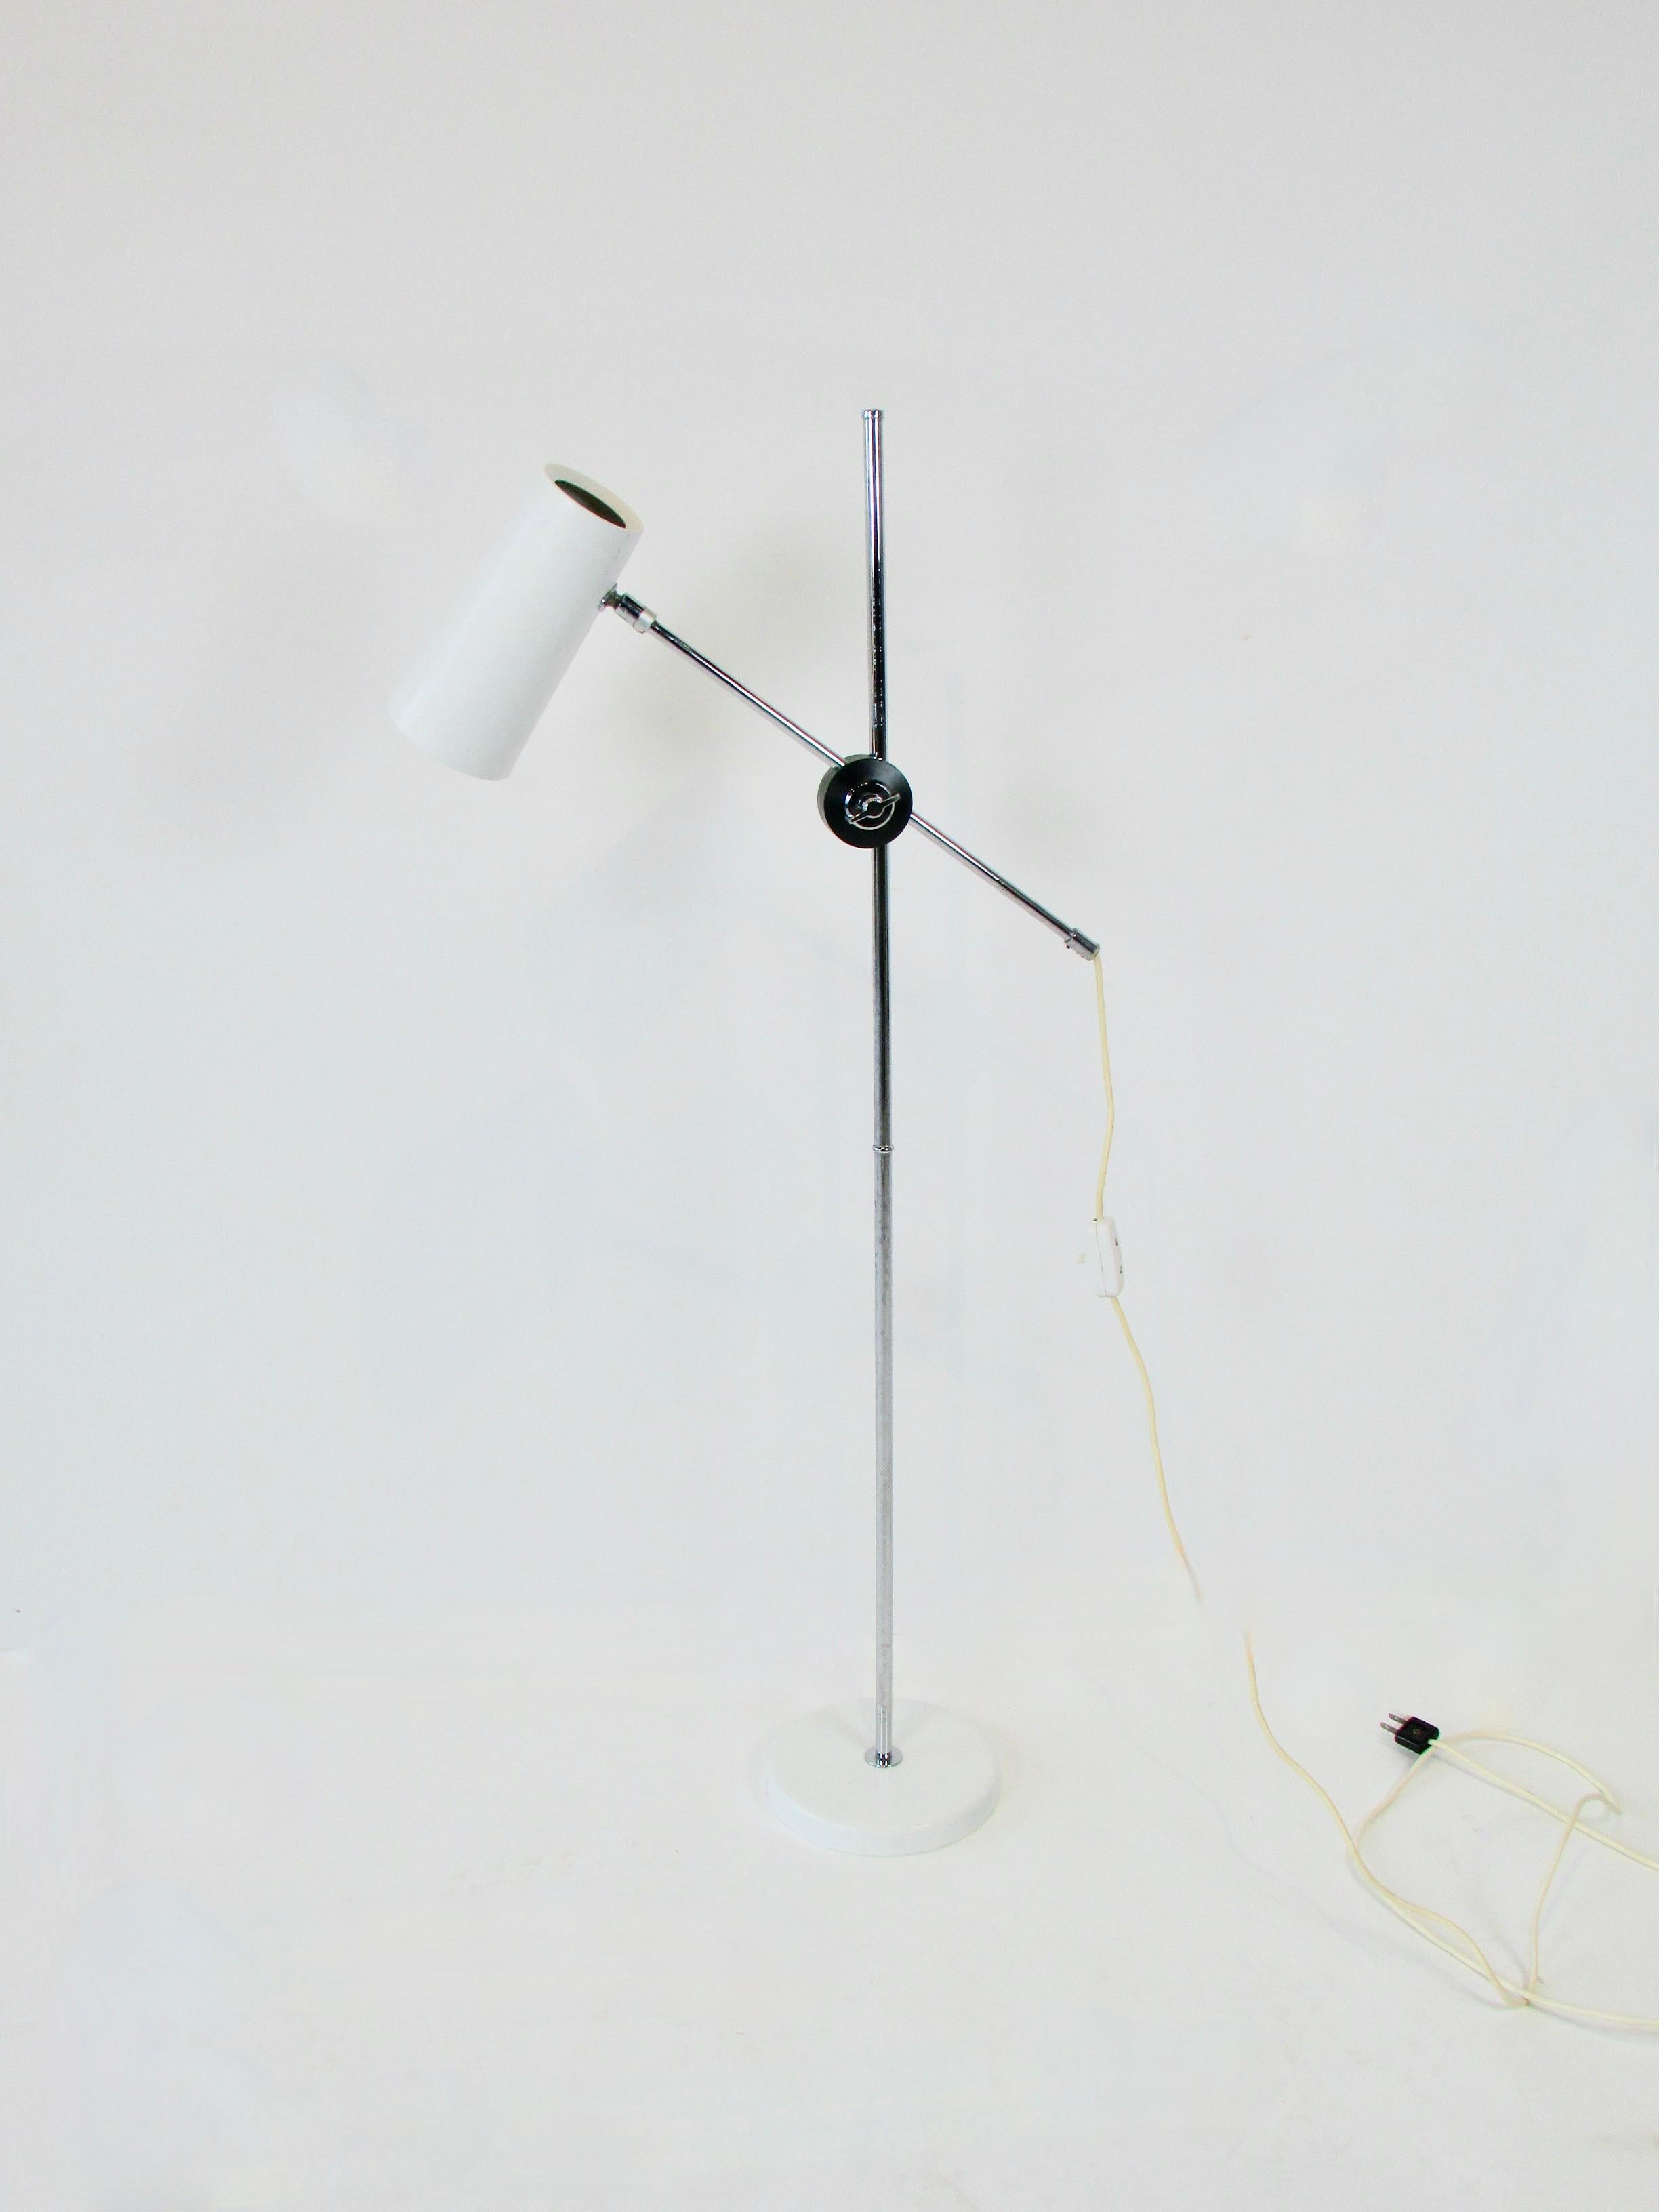 Anders Pehrson a conçu la lampe de travail moderne Multi ajustable. Produit par Ateljie Lyktan Ahus Sweden . 
L'arbre horizontal maintient l'abat-jour conique inclinable avec un diffuseur en lucite blanc à l'arrière. Le diffuseur conserve